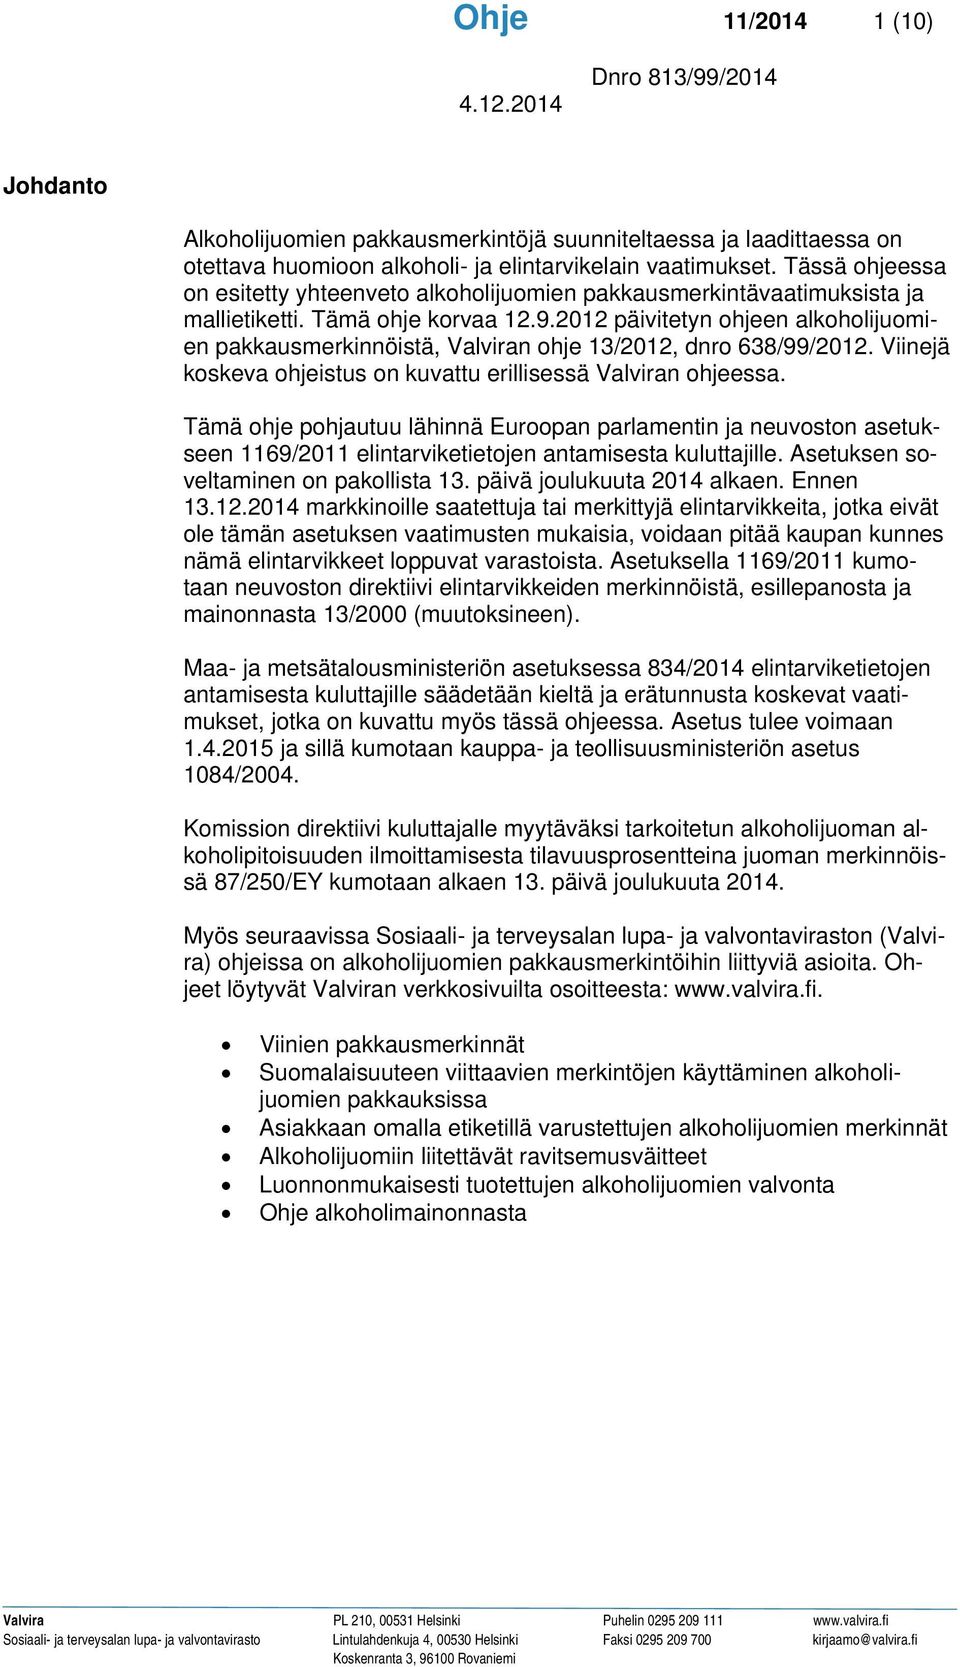 2012 päivitetyn ohjeen alkoholijuomien pakkausmerkinnöistä, Valviran ohje 13/2012, dnro 638/99/2012. Viinejä koskeva ohjeistus on kuvattu erillisessä Valviran ohjeessa.